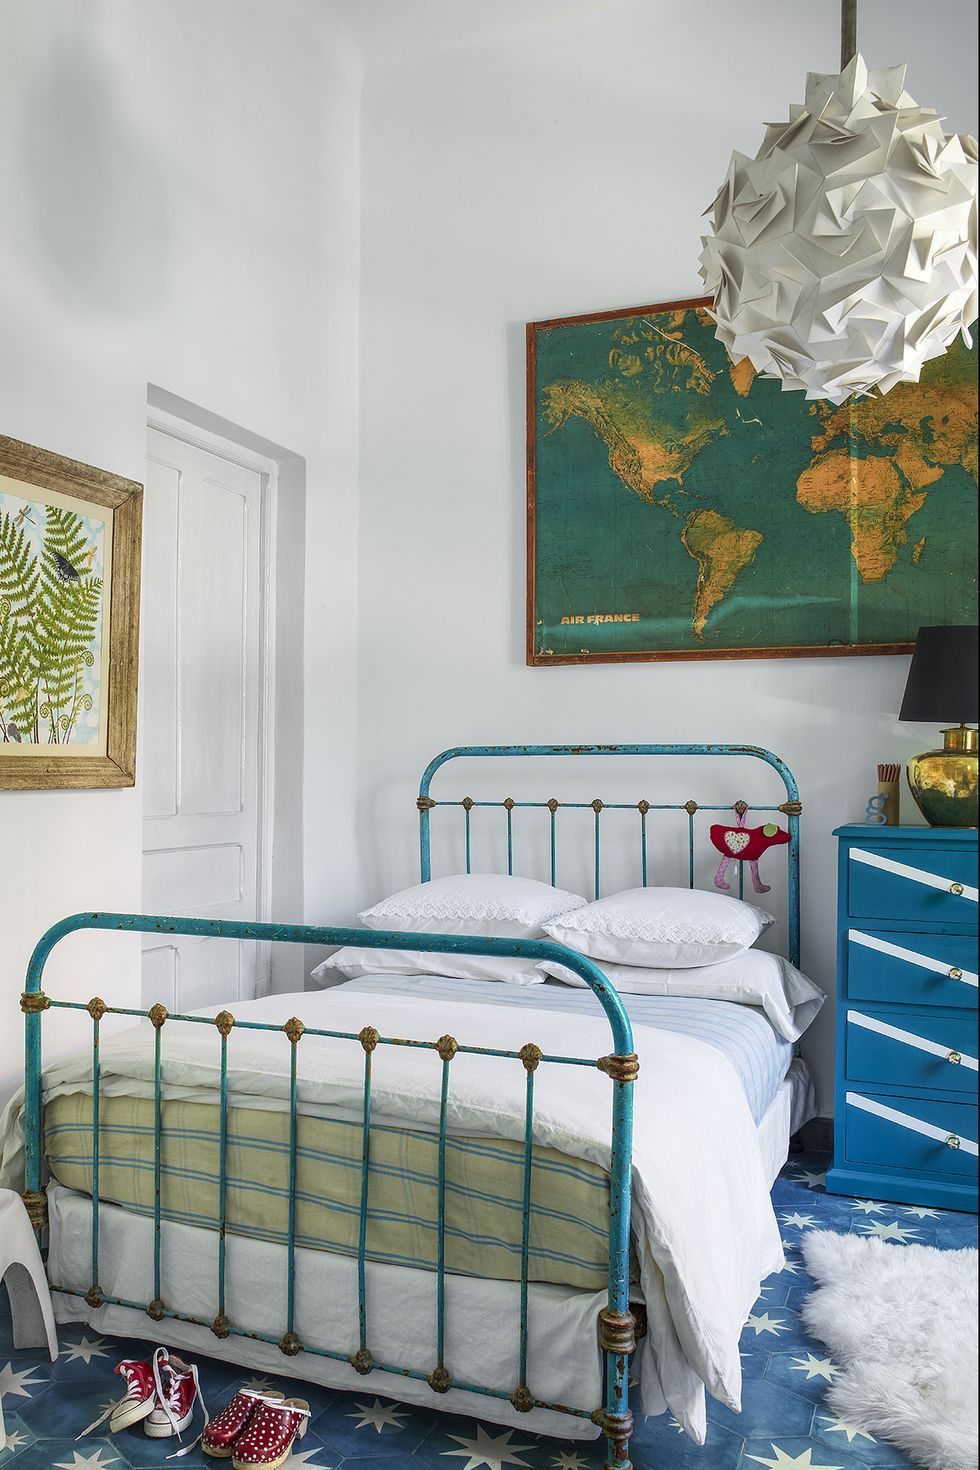 20 Stylish Teen Room Ideas - Creative Teen Bedroom Photos